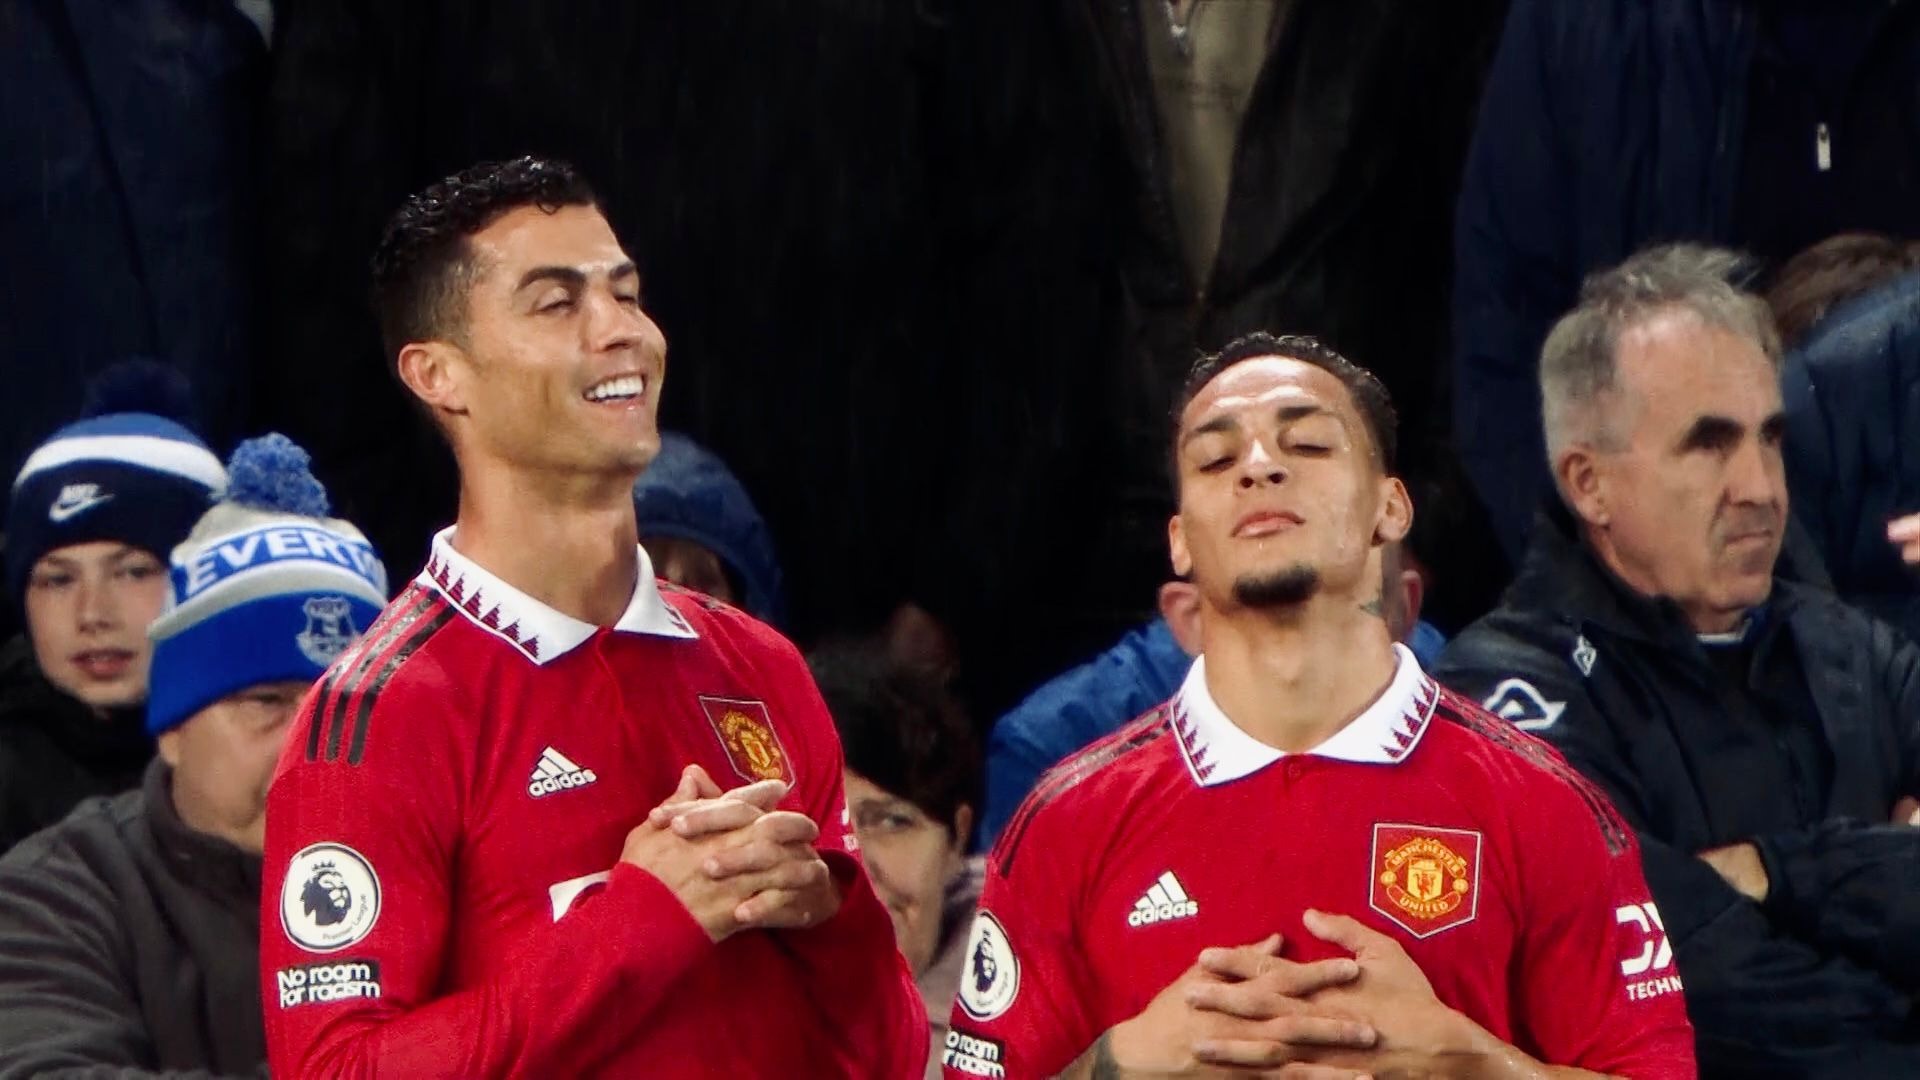 Cùng chia vui và ăn mừng cùng Ronaldo trong trận đấu với Everton. Bức ảnh này giúp bạn hiểu hơn về cảm xúc của chàng cầu thủ khi anh ấy ghi bàn quyết định chiến thắng cho đội bóng của mình.